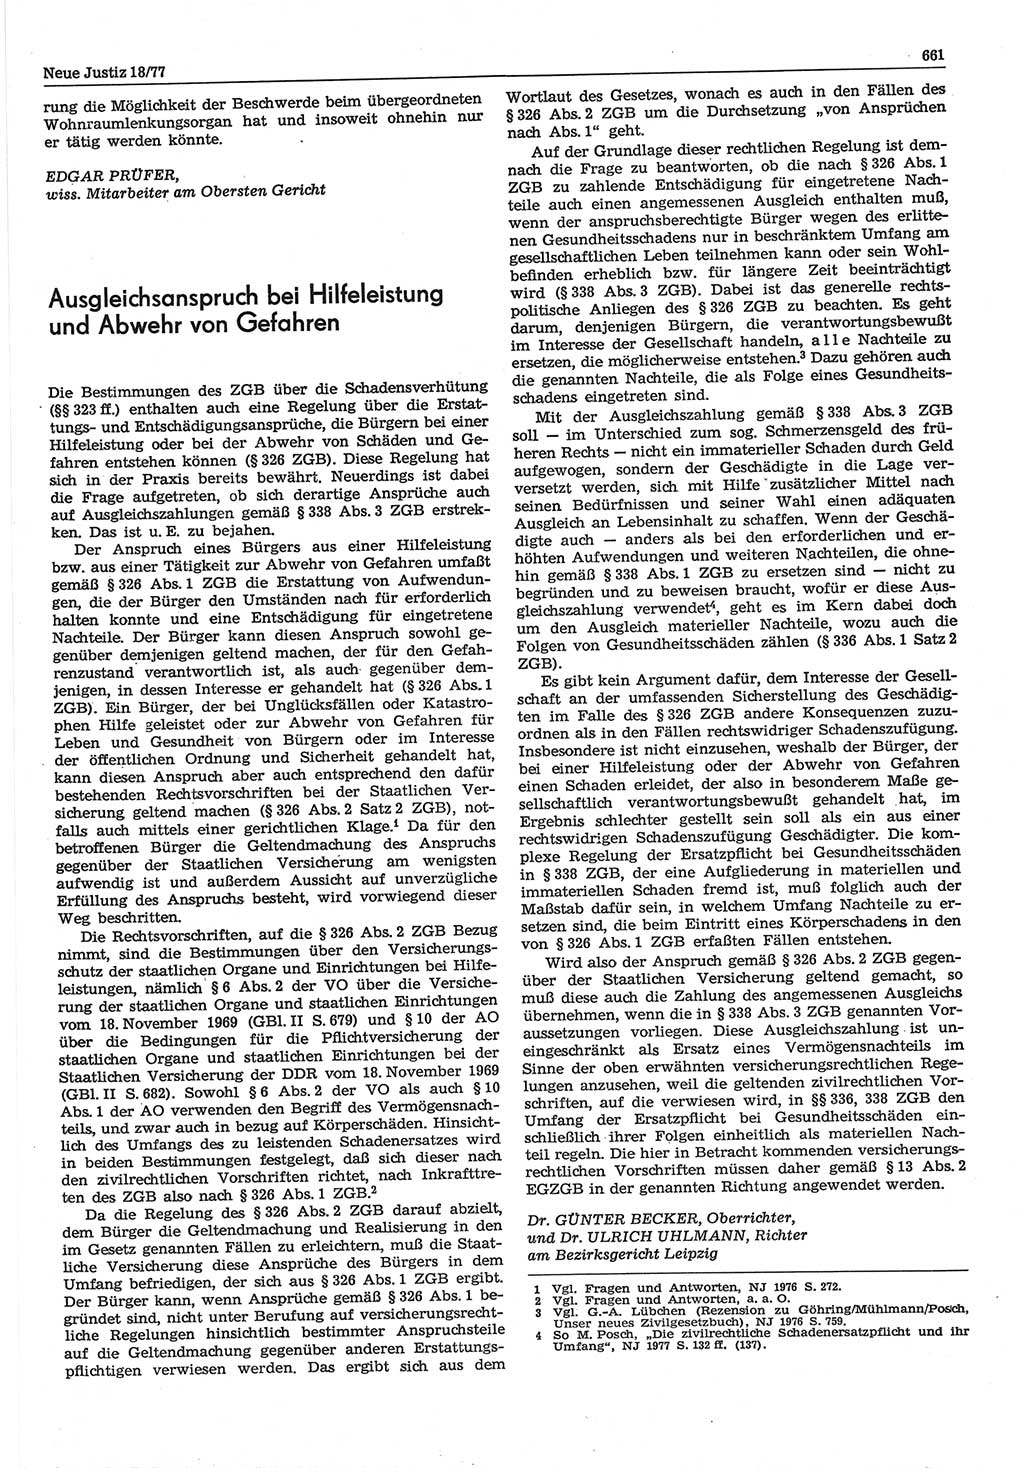 Neue Justiz (NJ), Zeitschrift für Recht und Rechtswissenschaft-Zeitschrift, sozialistisches Recht und Gesetzlichkeit, 31. Jahrgang 1977, Seite 661 (NJ DDR 1977, S. 661)